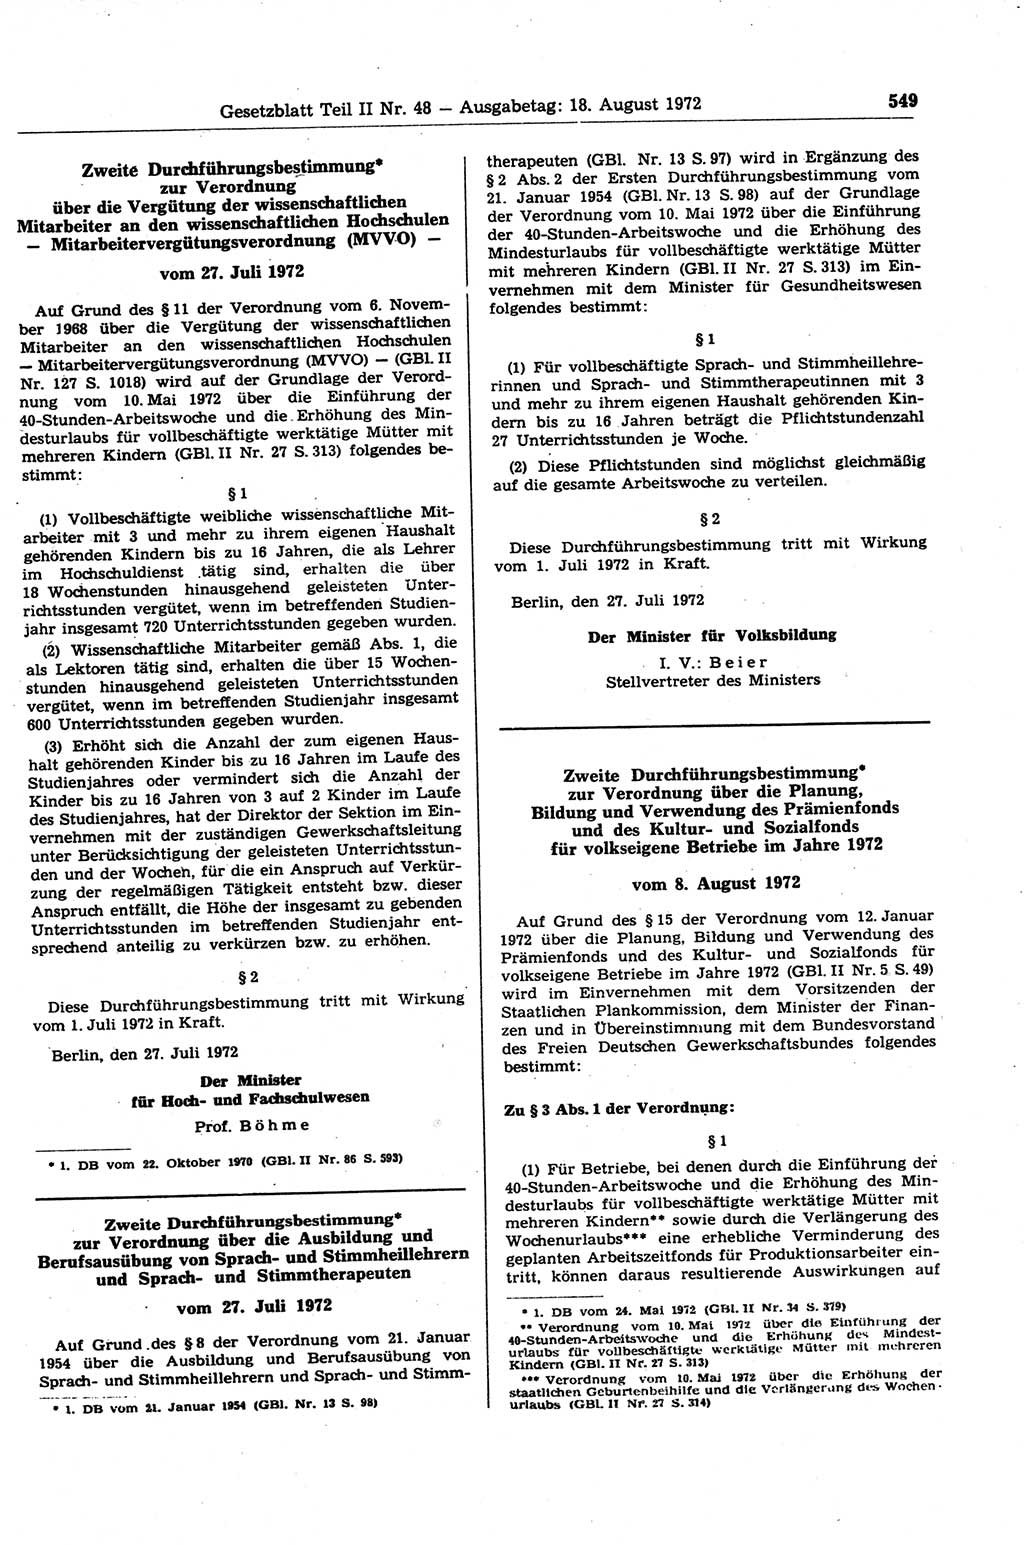 Gesetzblatt (GBl.) der Deutschen Demokratischen Republik (DDR) Teil ⅠⅠ 1972, Seite 549 (GBl. DDR ⅠⅠ 1972, S. 549)